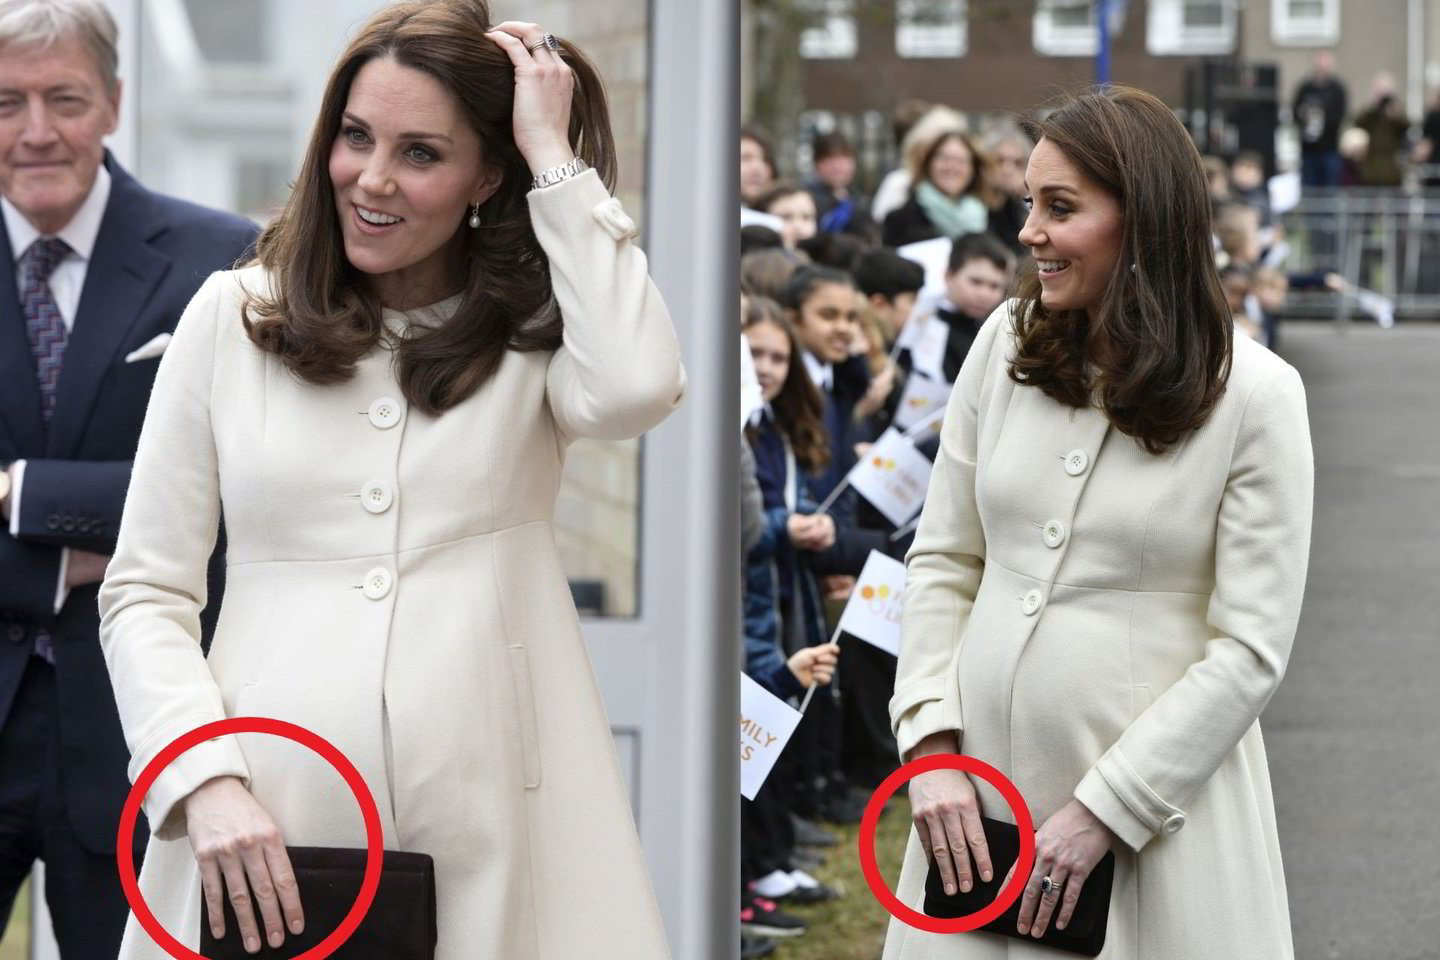  Neįprasta pasirodė tai, kad kunigaikštienės trys centriniai rankų pirštai yra vienodo ilgumo, tai buvo užfiksuota fotografų nuotraukose.<br> AP nuotr.